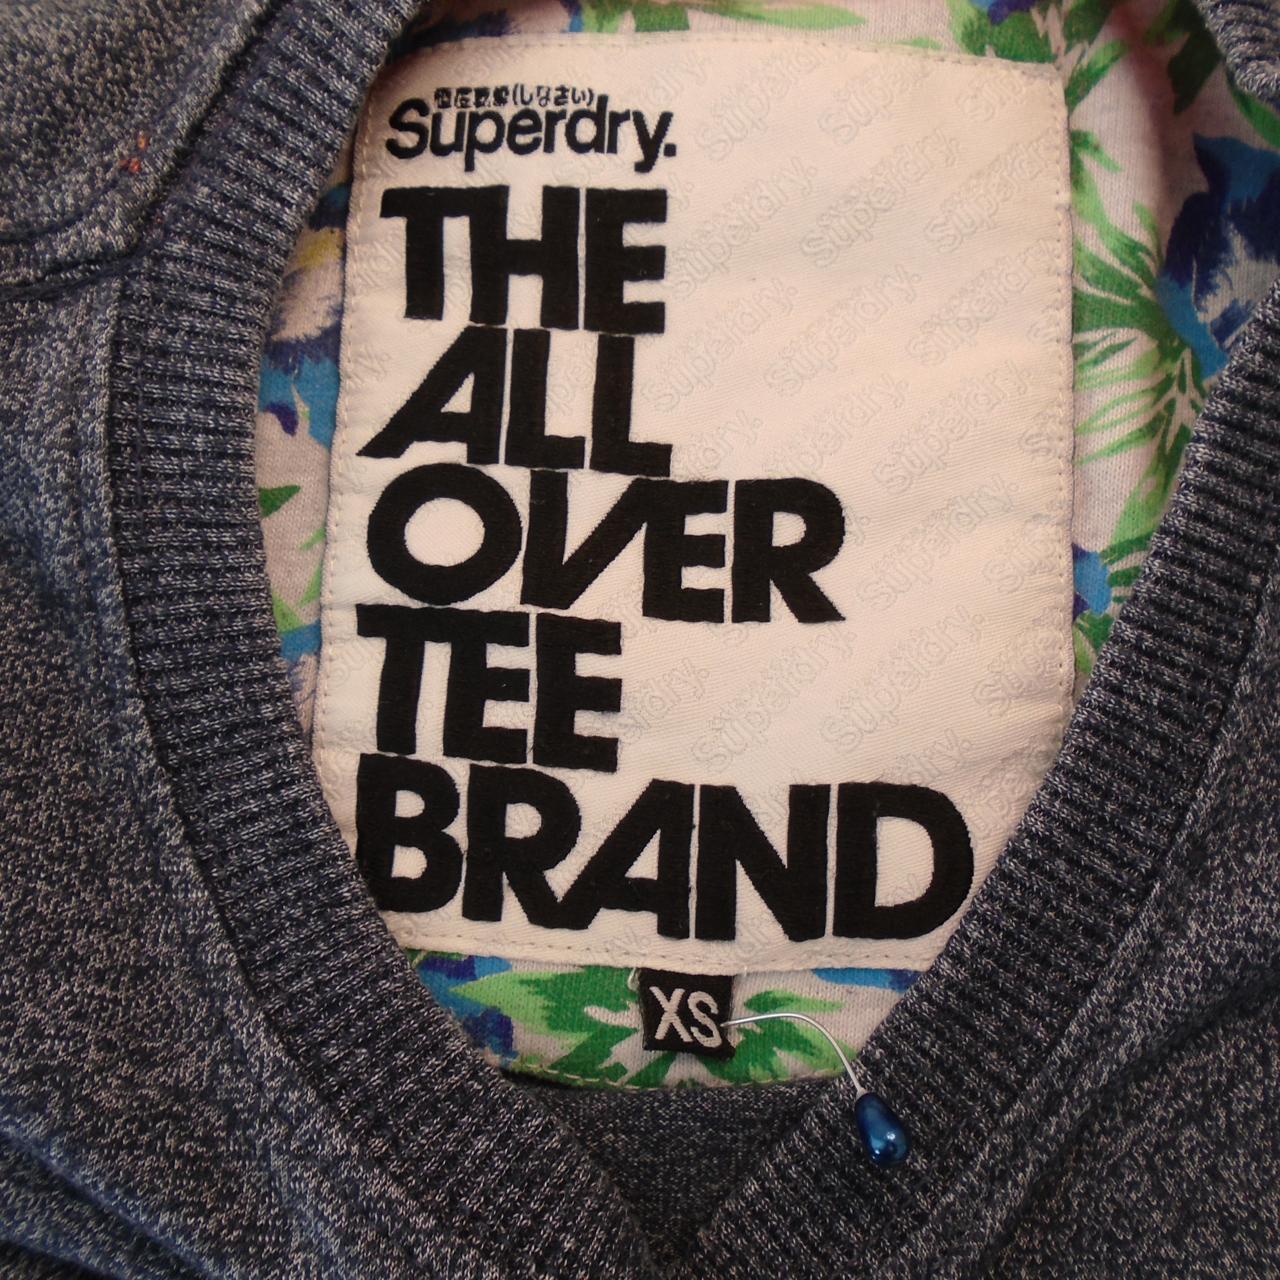 Camiseta de Superdry para hombre.  Gris.  XS.  Usó.  Bien